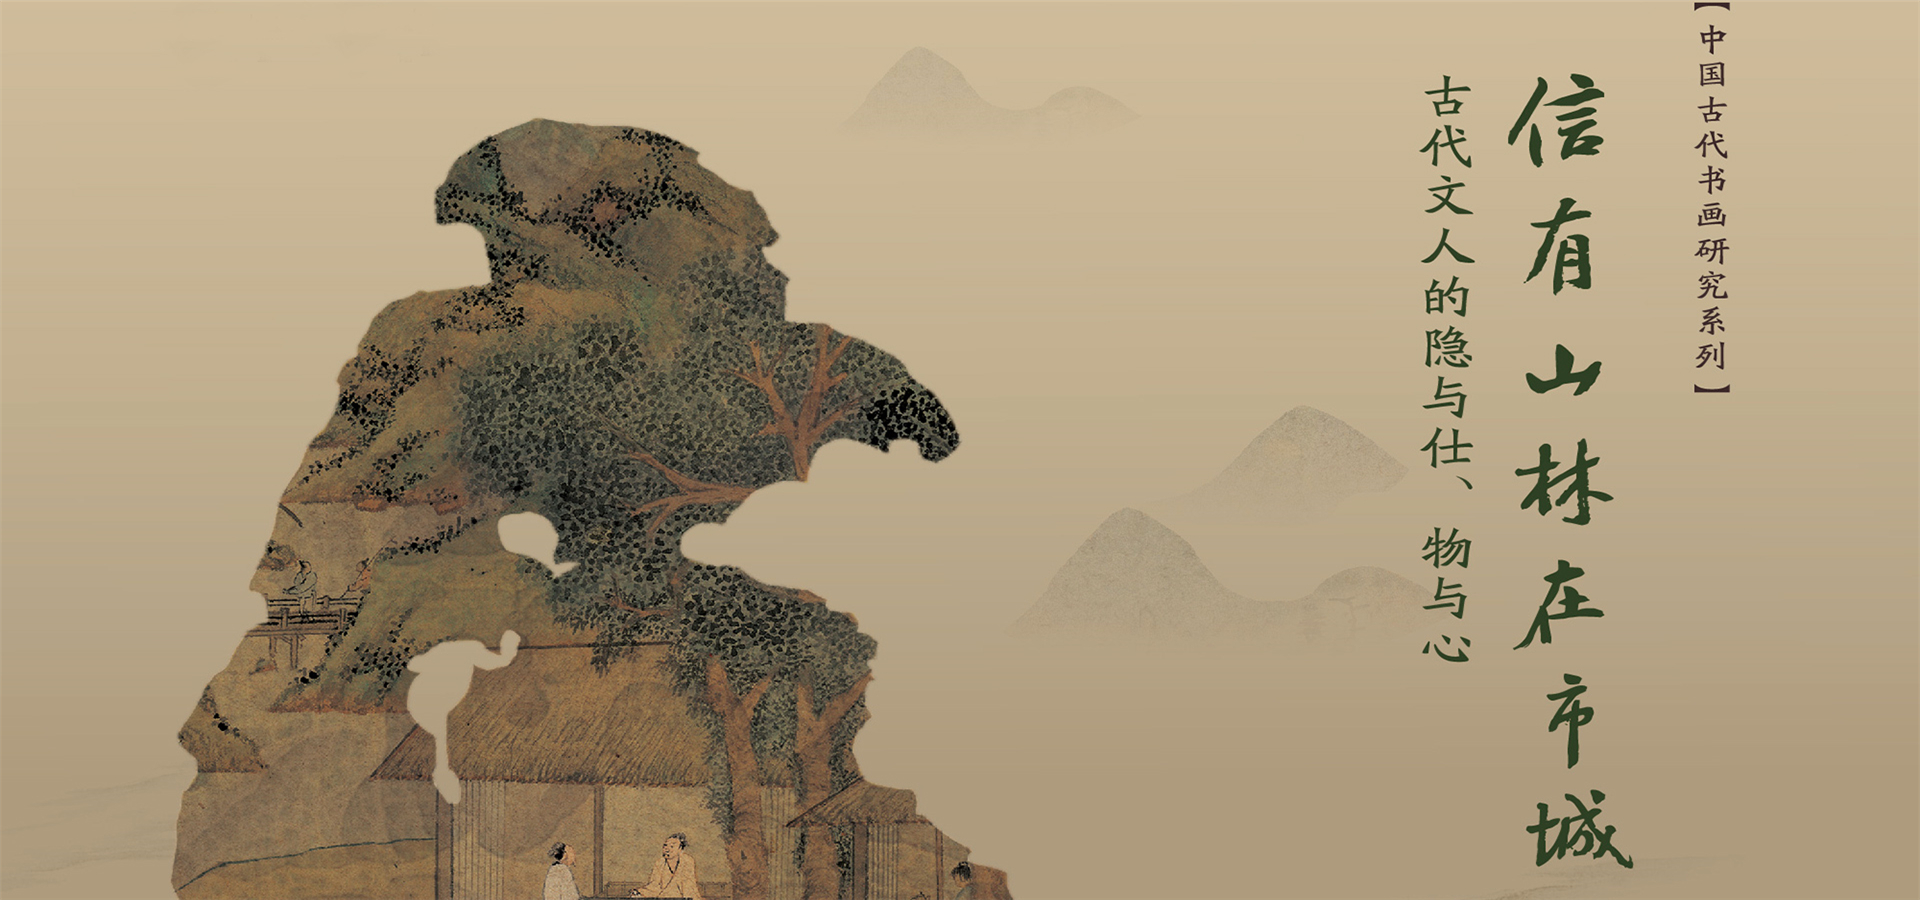 “信有山林在市城——古代文人的隐与仕、物与心”展览亮相北京画院美术馆